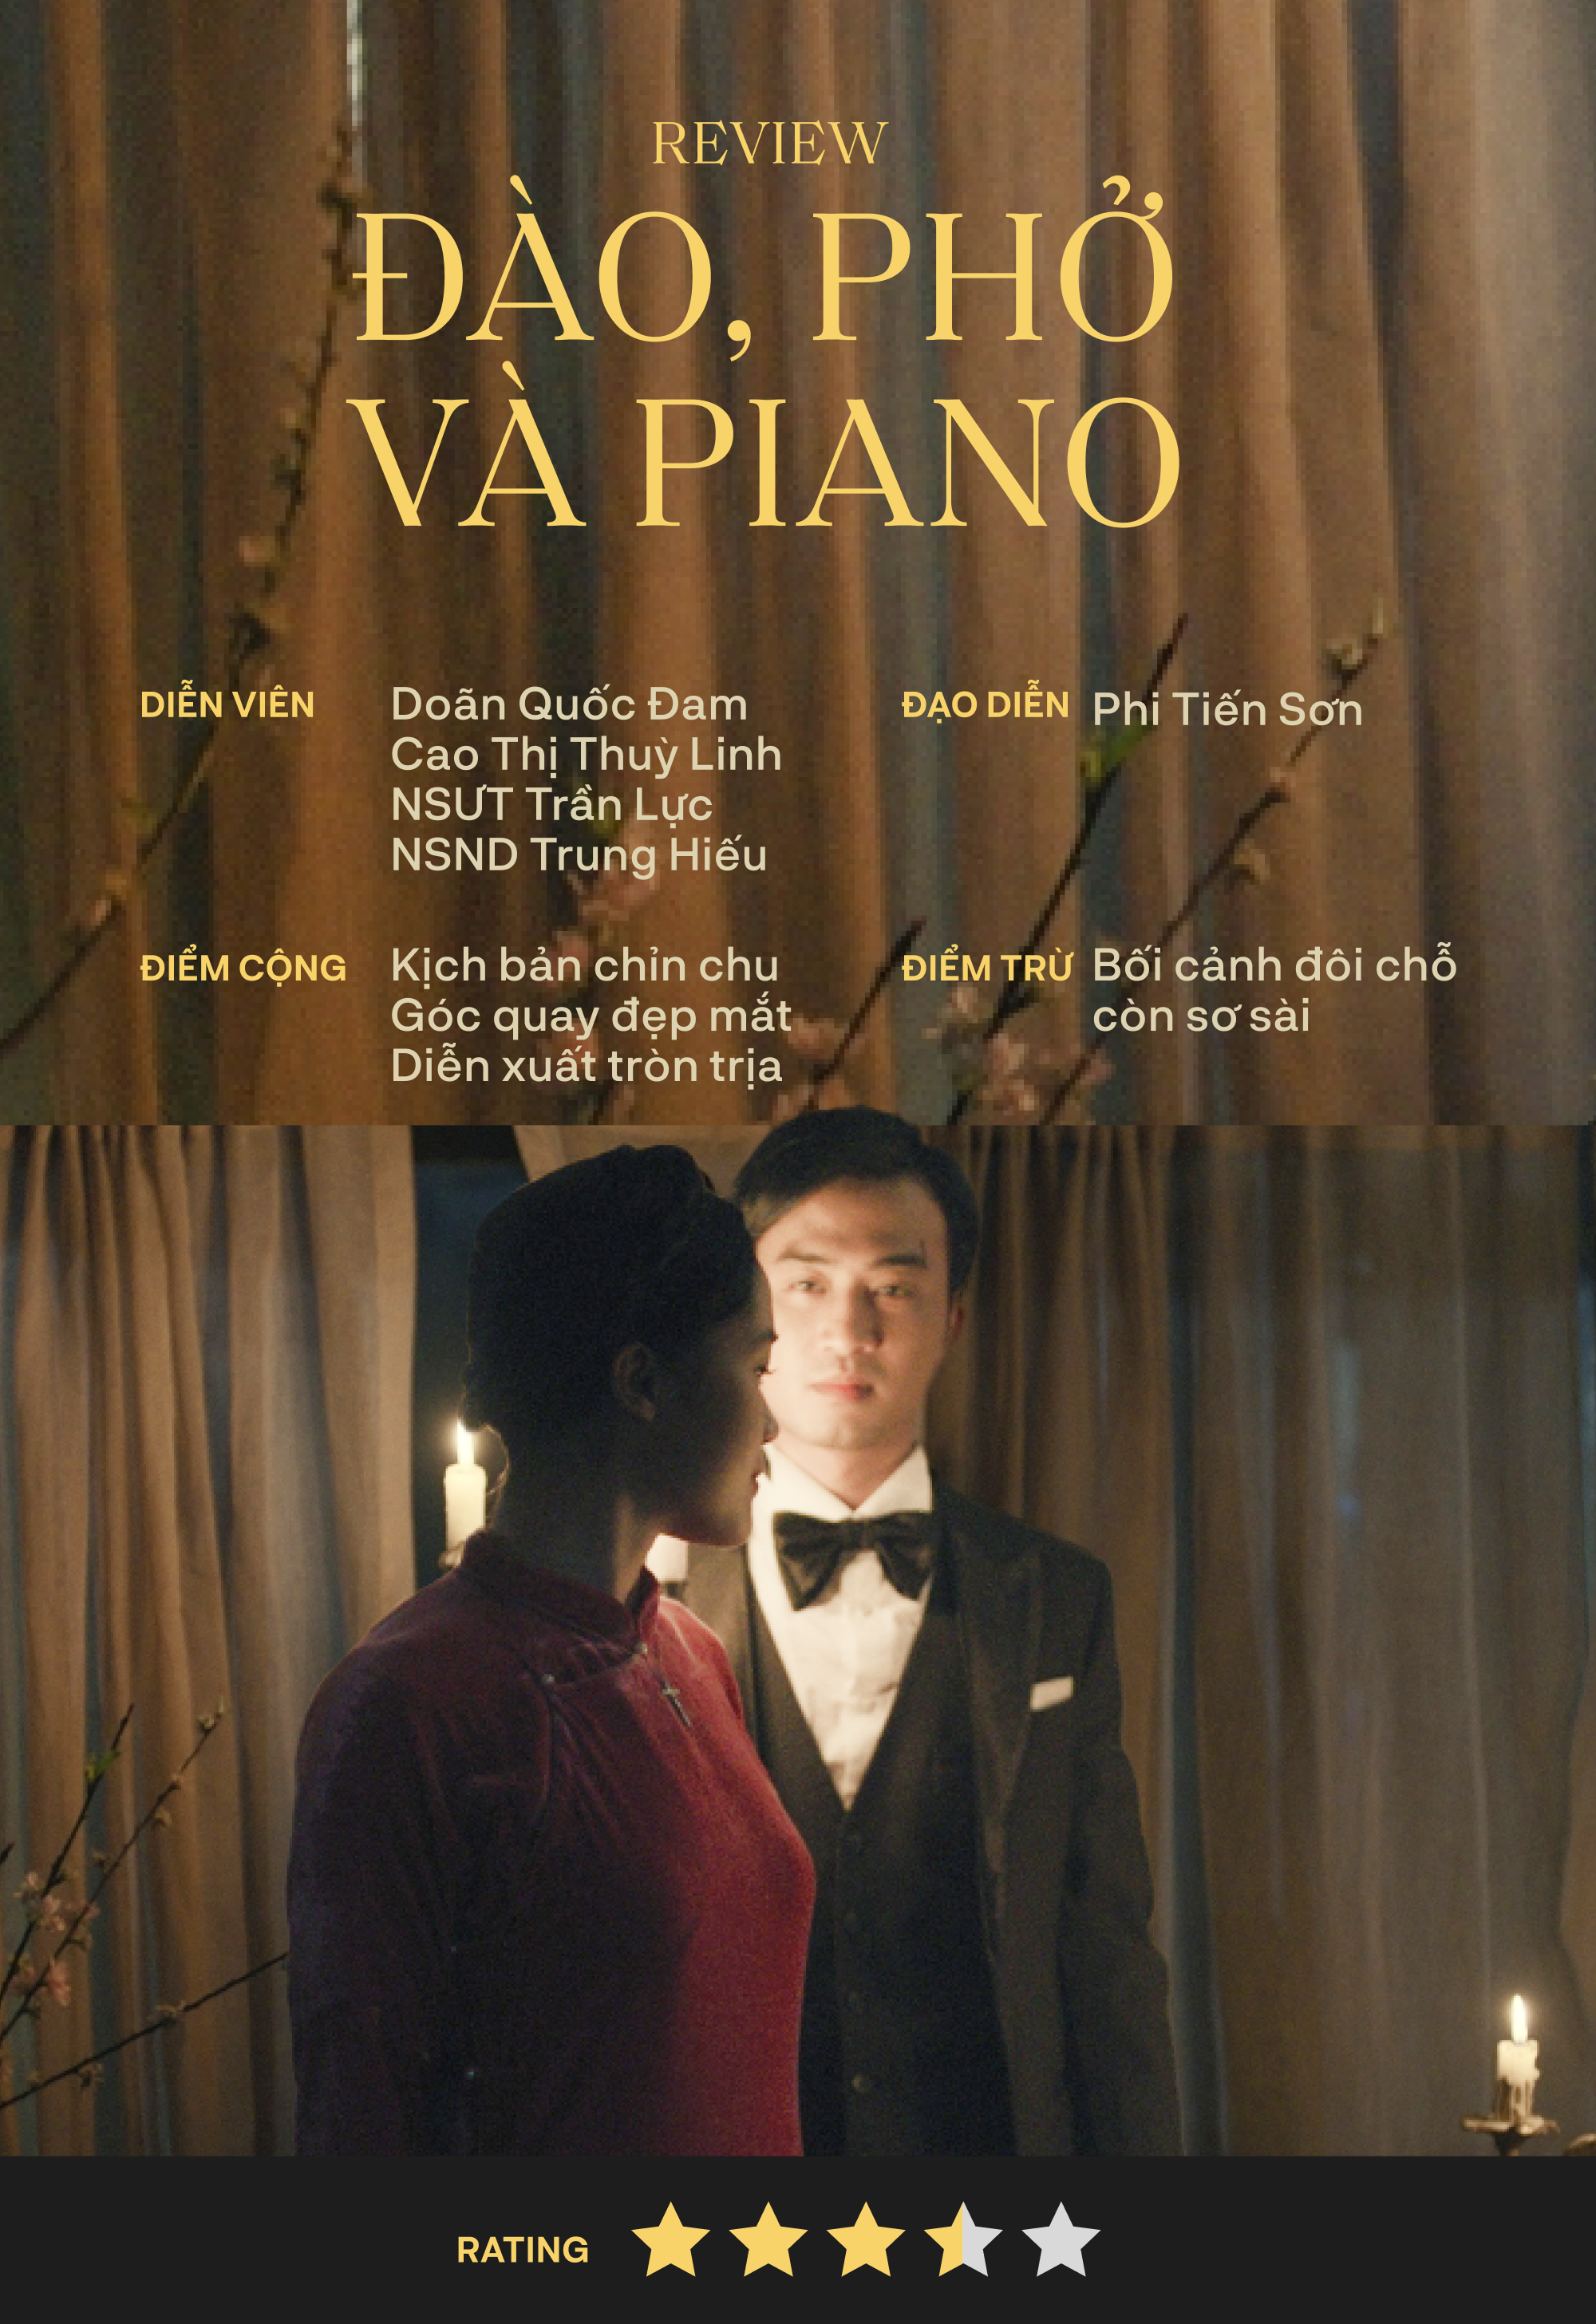 Đào, Phở và Piano: Bộ phim chất lượng xứng đáng trở thành cơn sốt phòng vé những ngày qua- Ảnh 10.